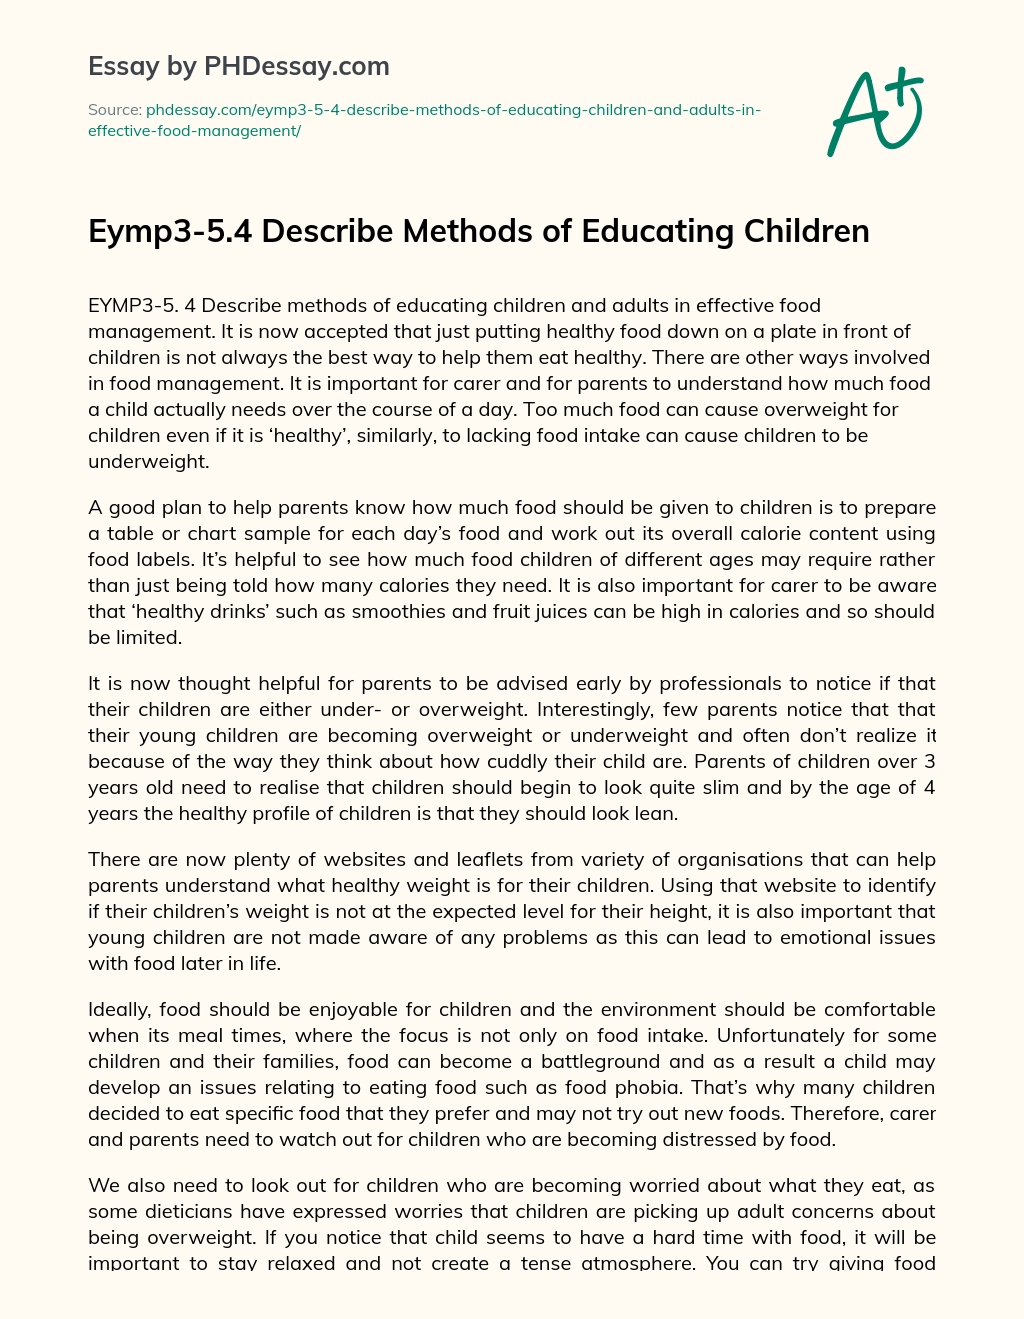 Eymp3-5.4 Describe Methods of Educating Children essay